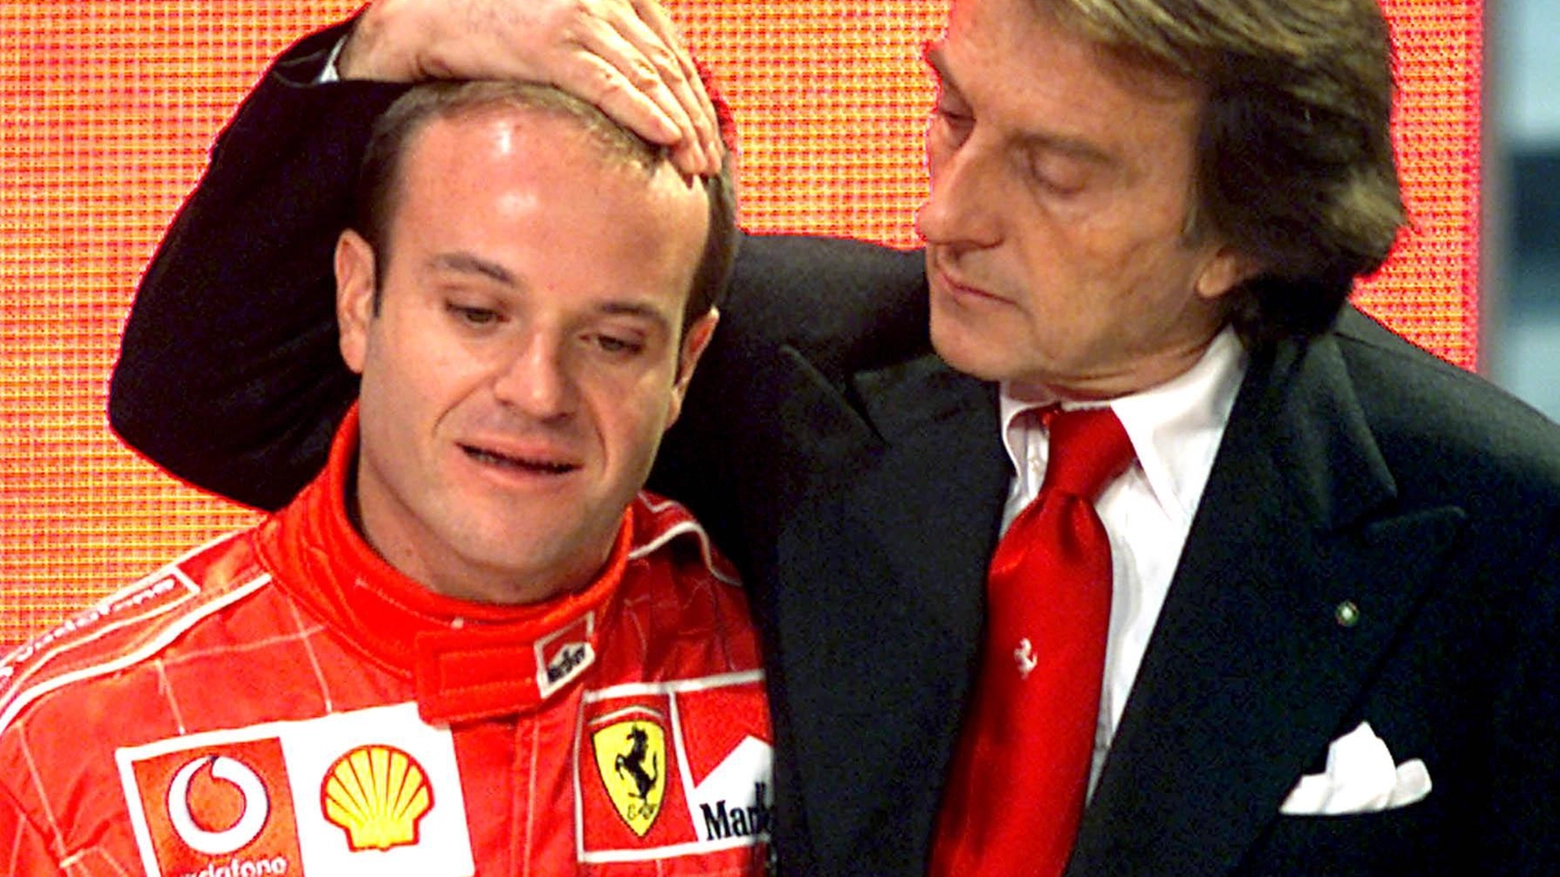 Rubens Barrichello e Luca Cordero di Montezemolo